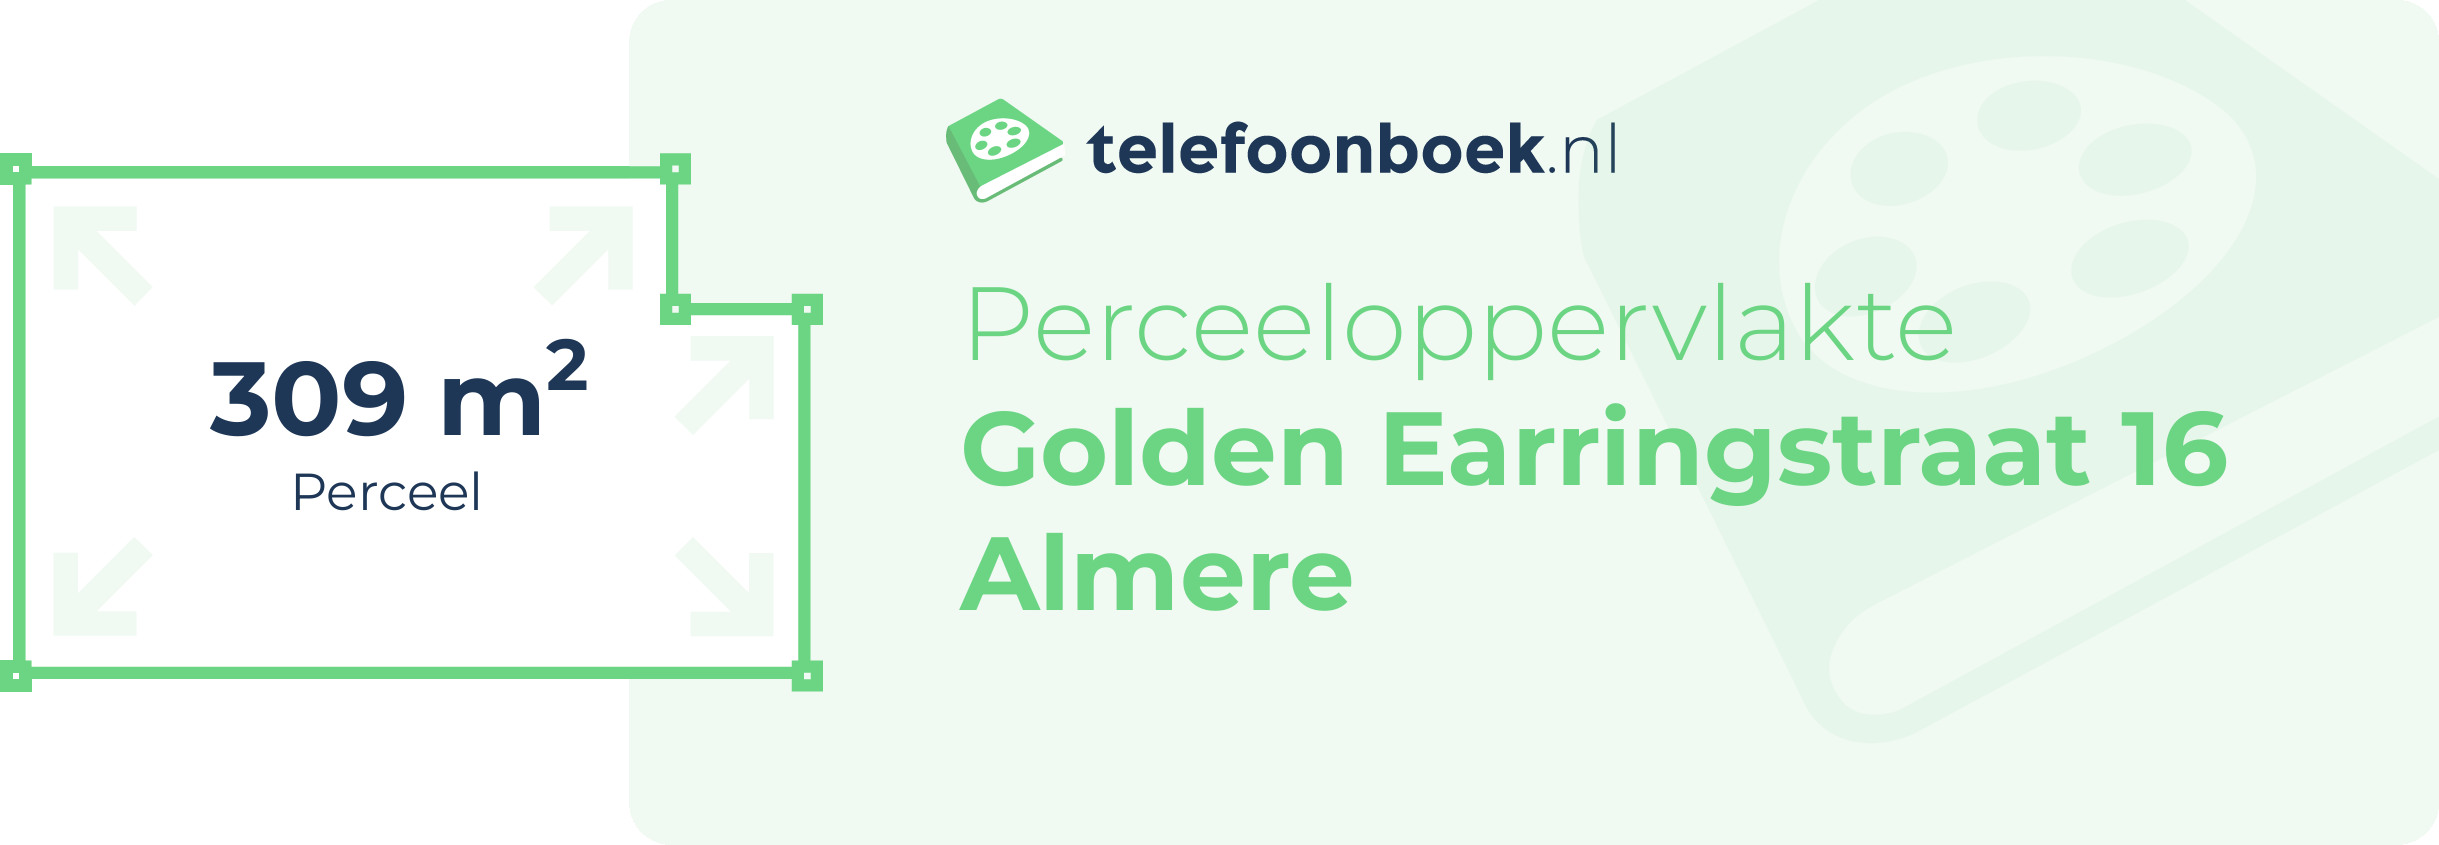 Perceeloppervlakte Golden Earringstraat 16 Almere